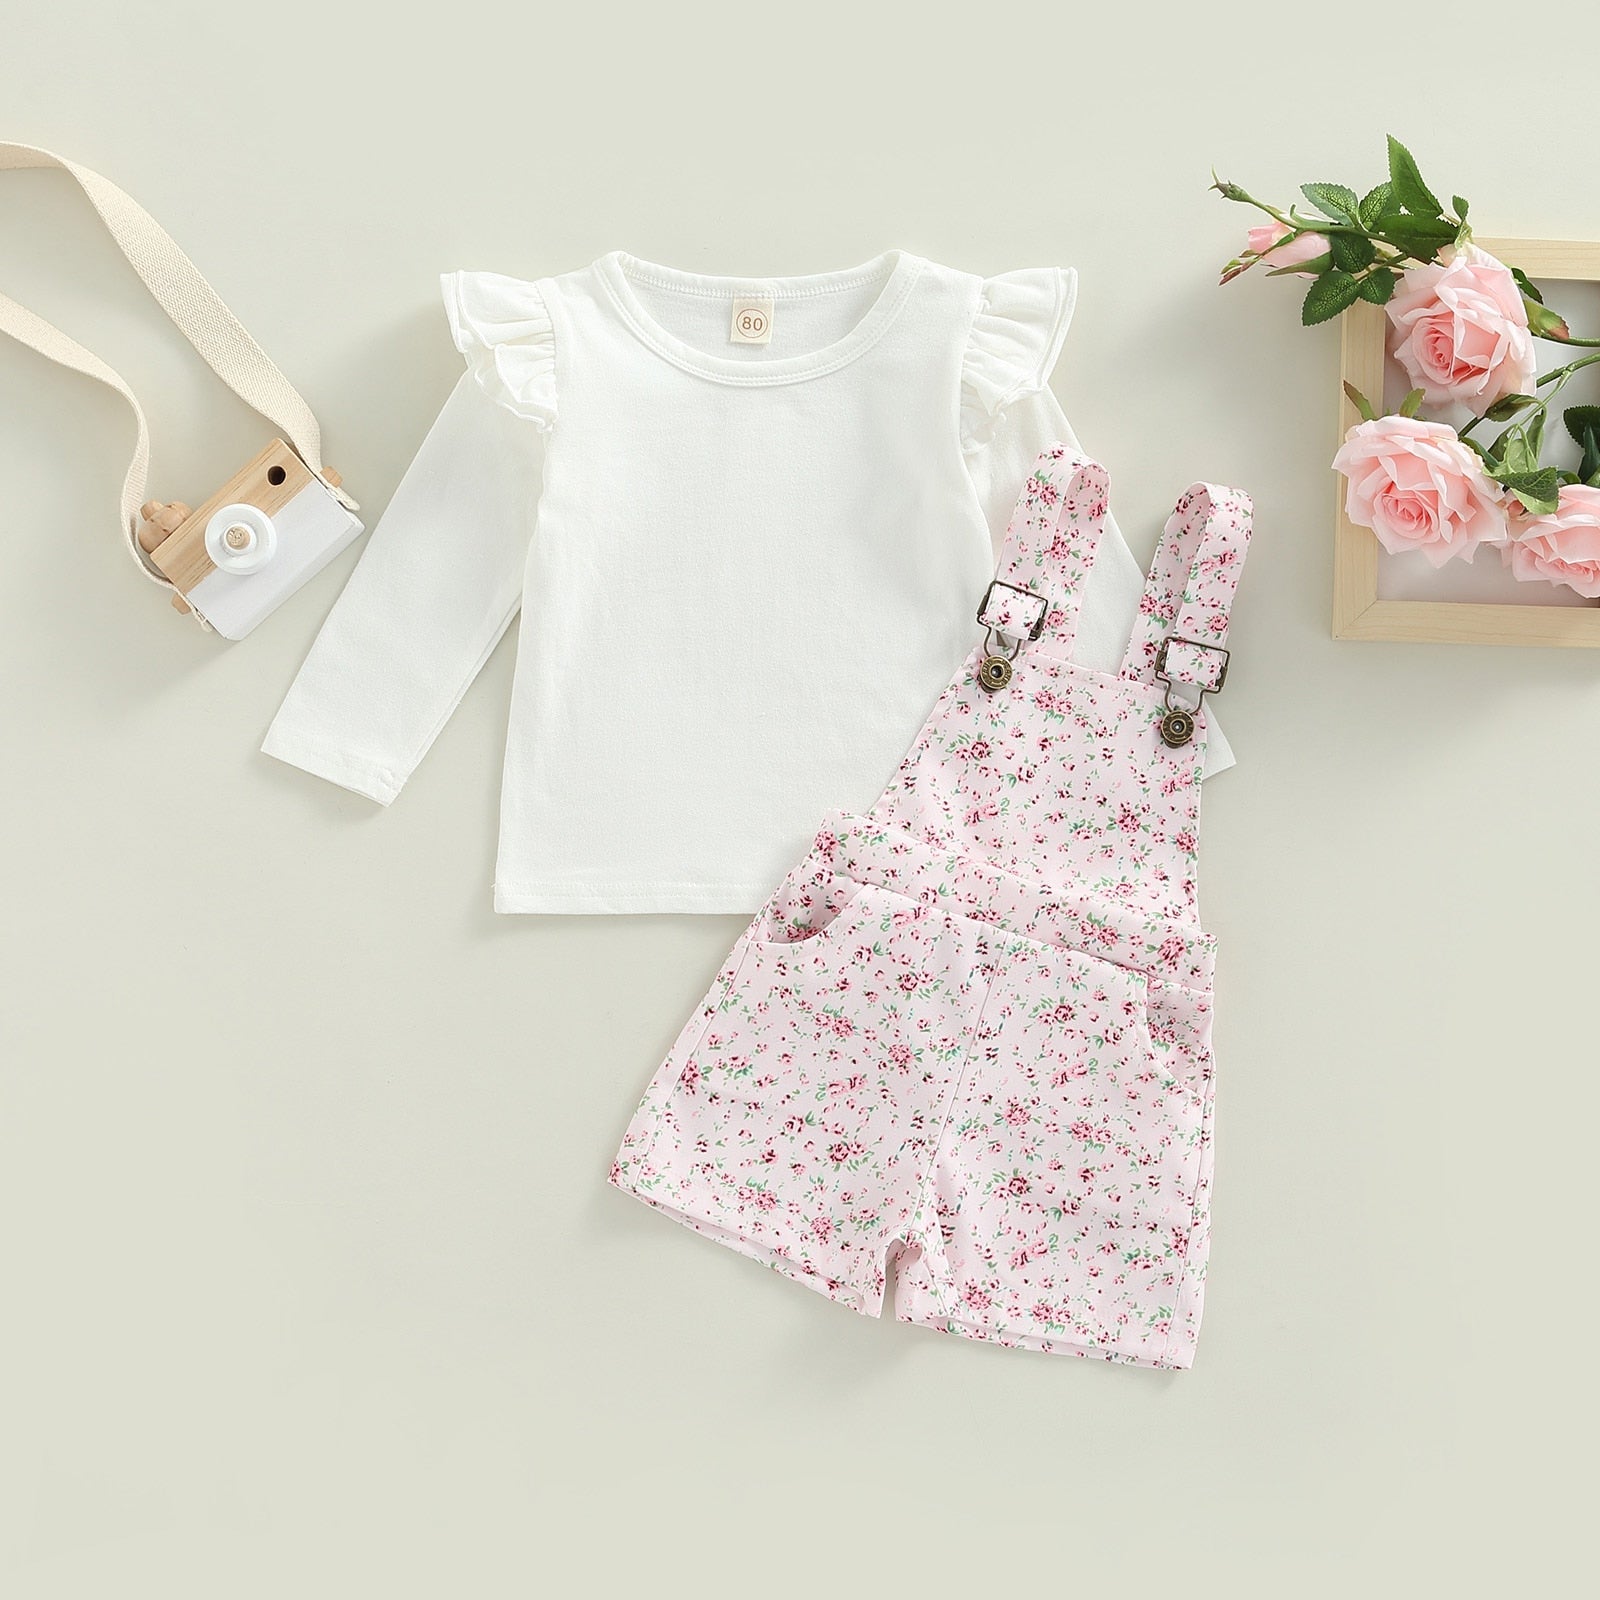 Conjunto Infantil Jardineira e Blusa Flores conjunto Loja Click Certo Rosa 2-3 Anos 